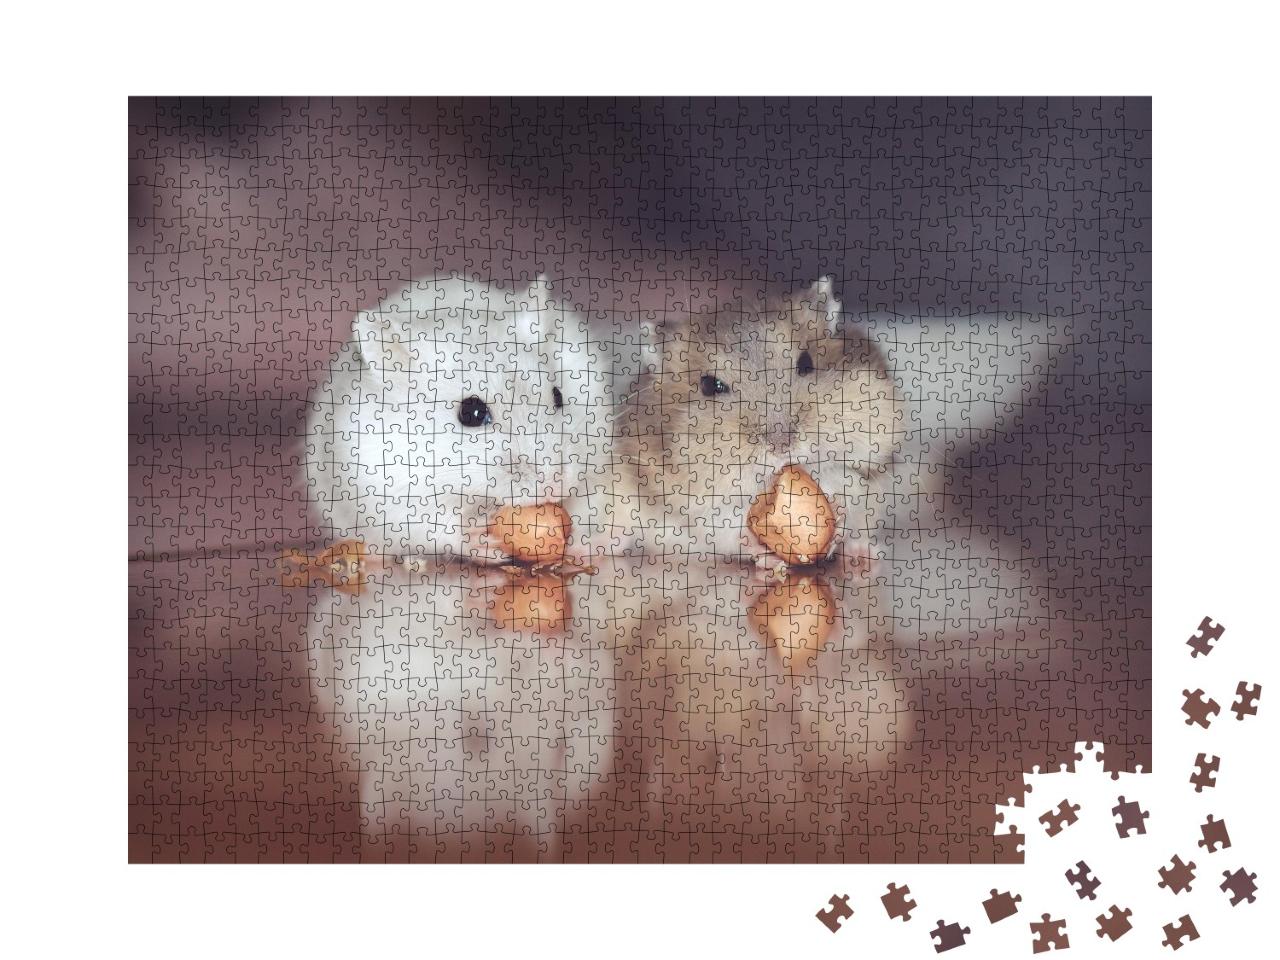 Puzzle de 1000 pièces « Deux adorables hamsters russes grignotent des noix »